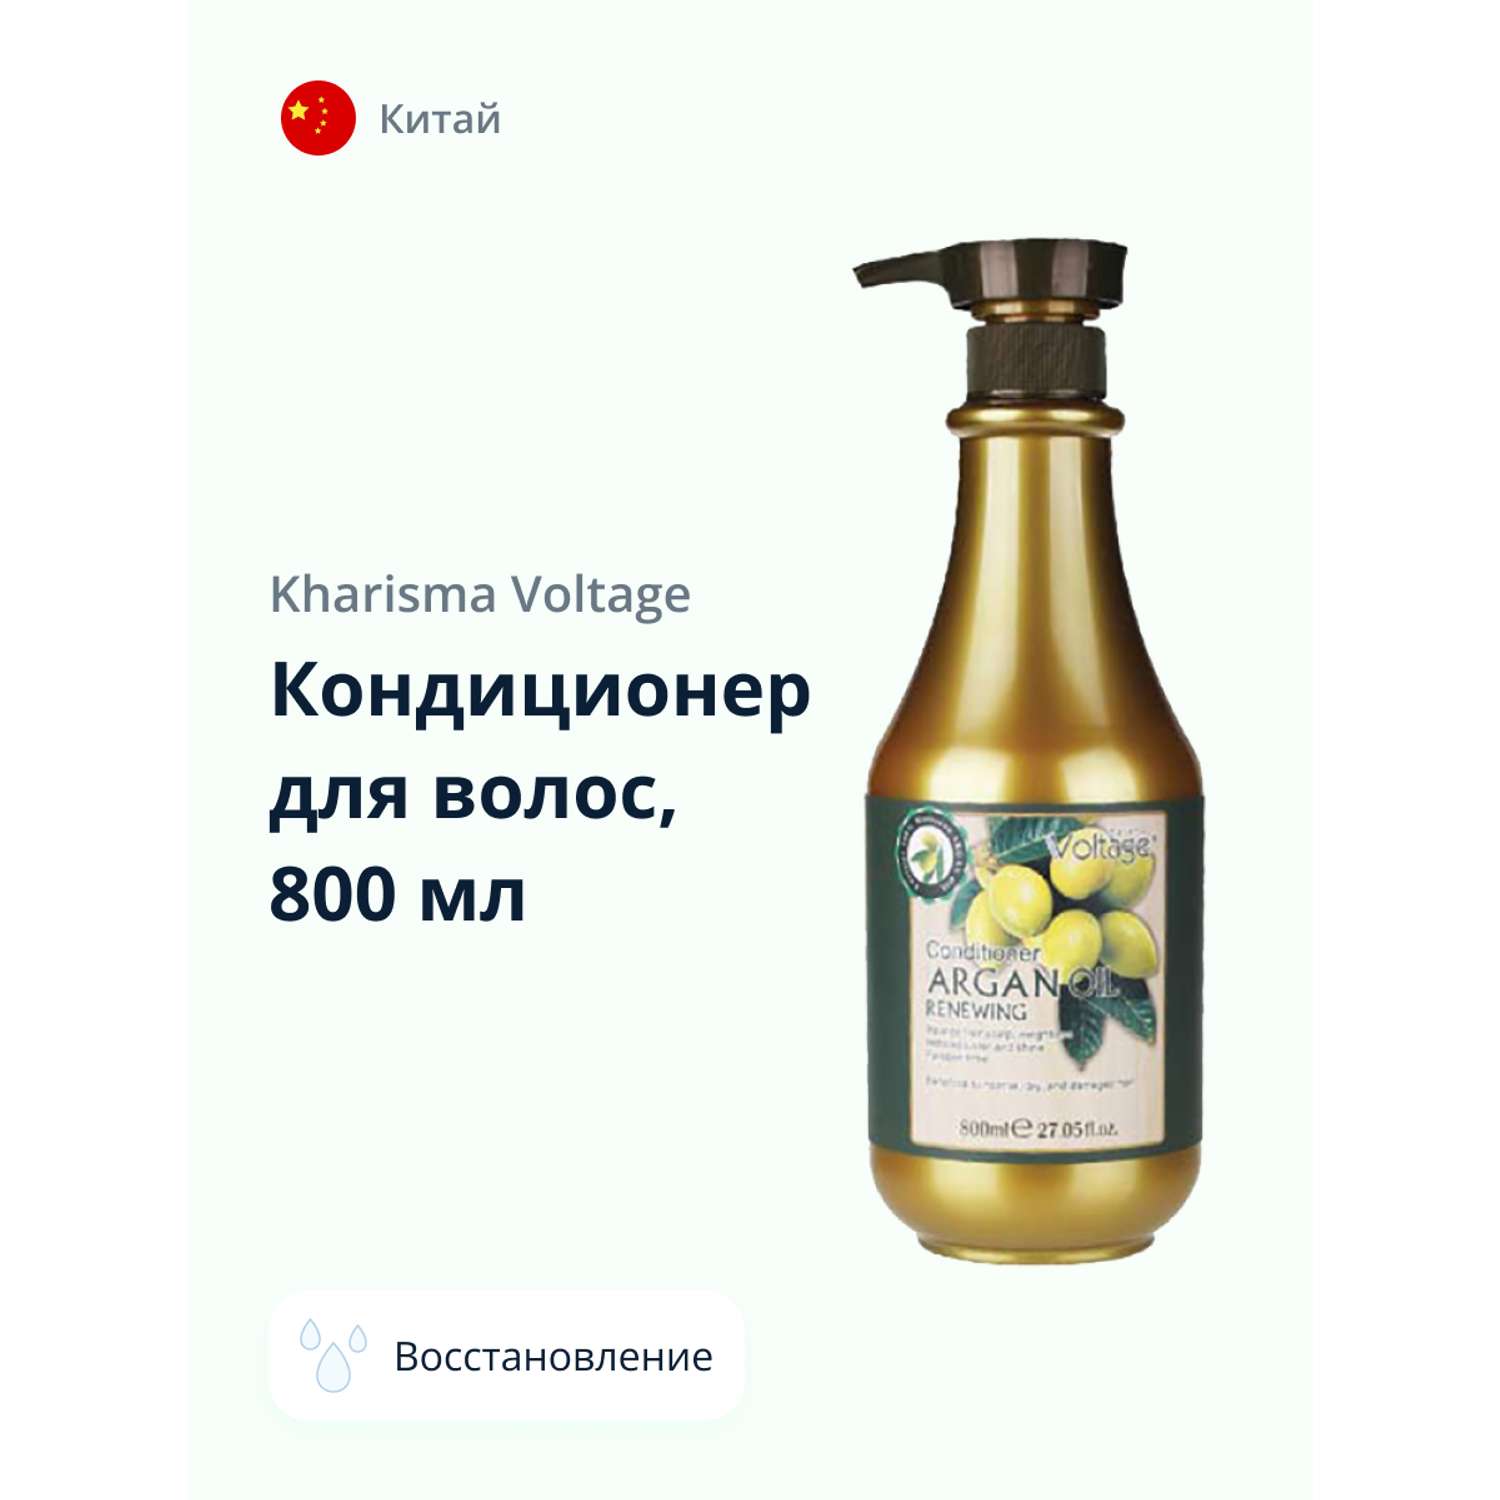 Кондиционер для волос Kharisma Voltage Argan oil восстанавливающий 800 мл - фото 1